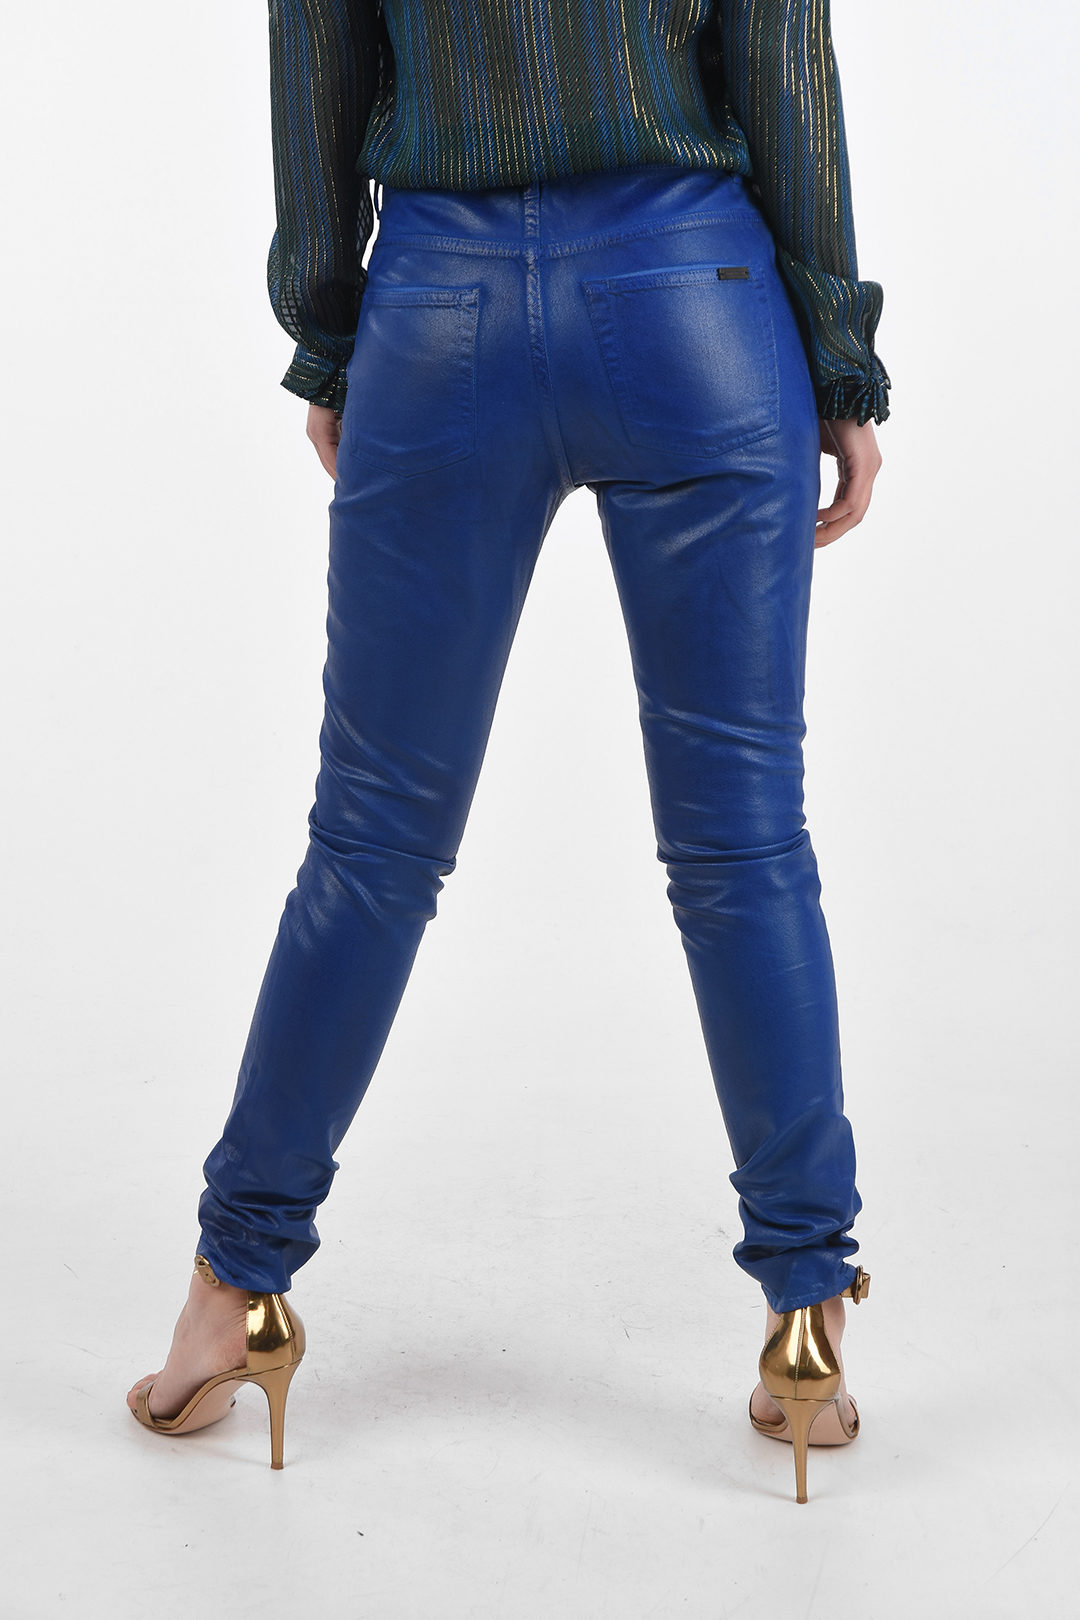 Saint Laurent Women's Black Coated Jeans